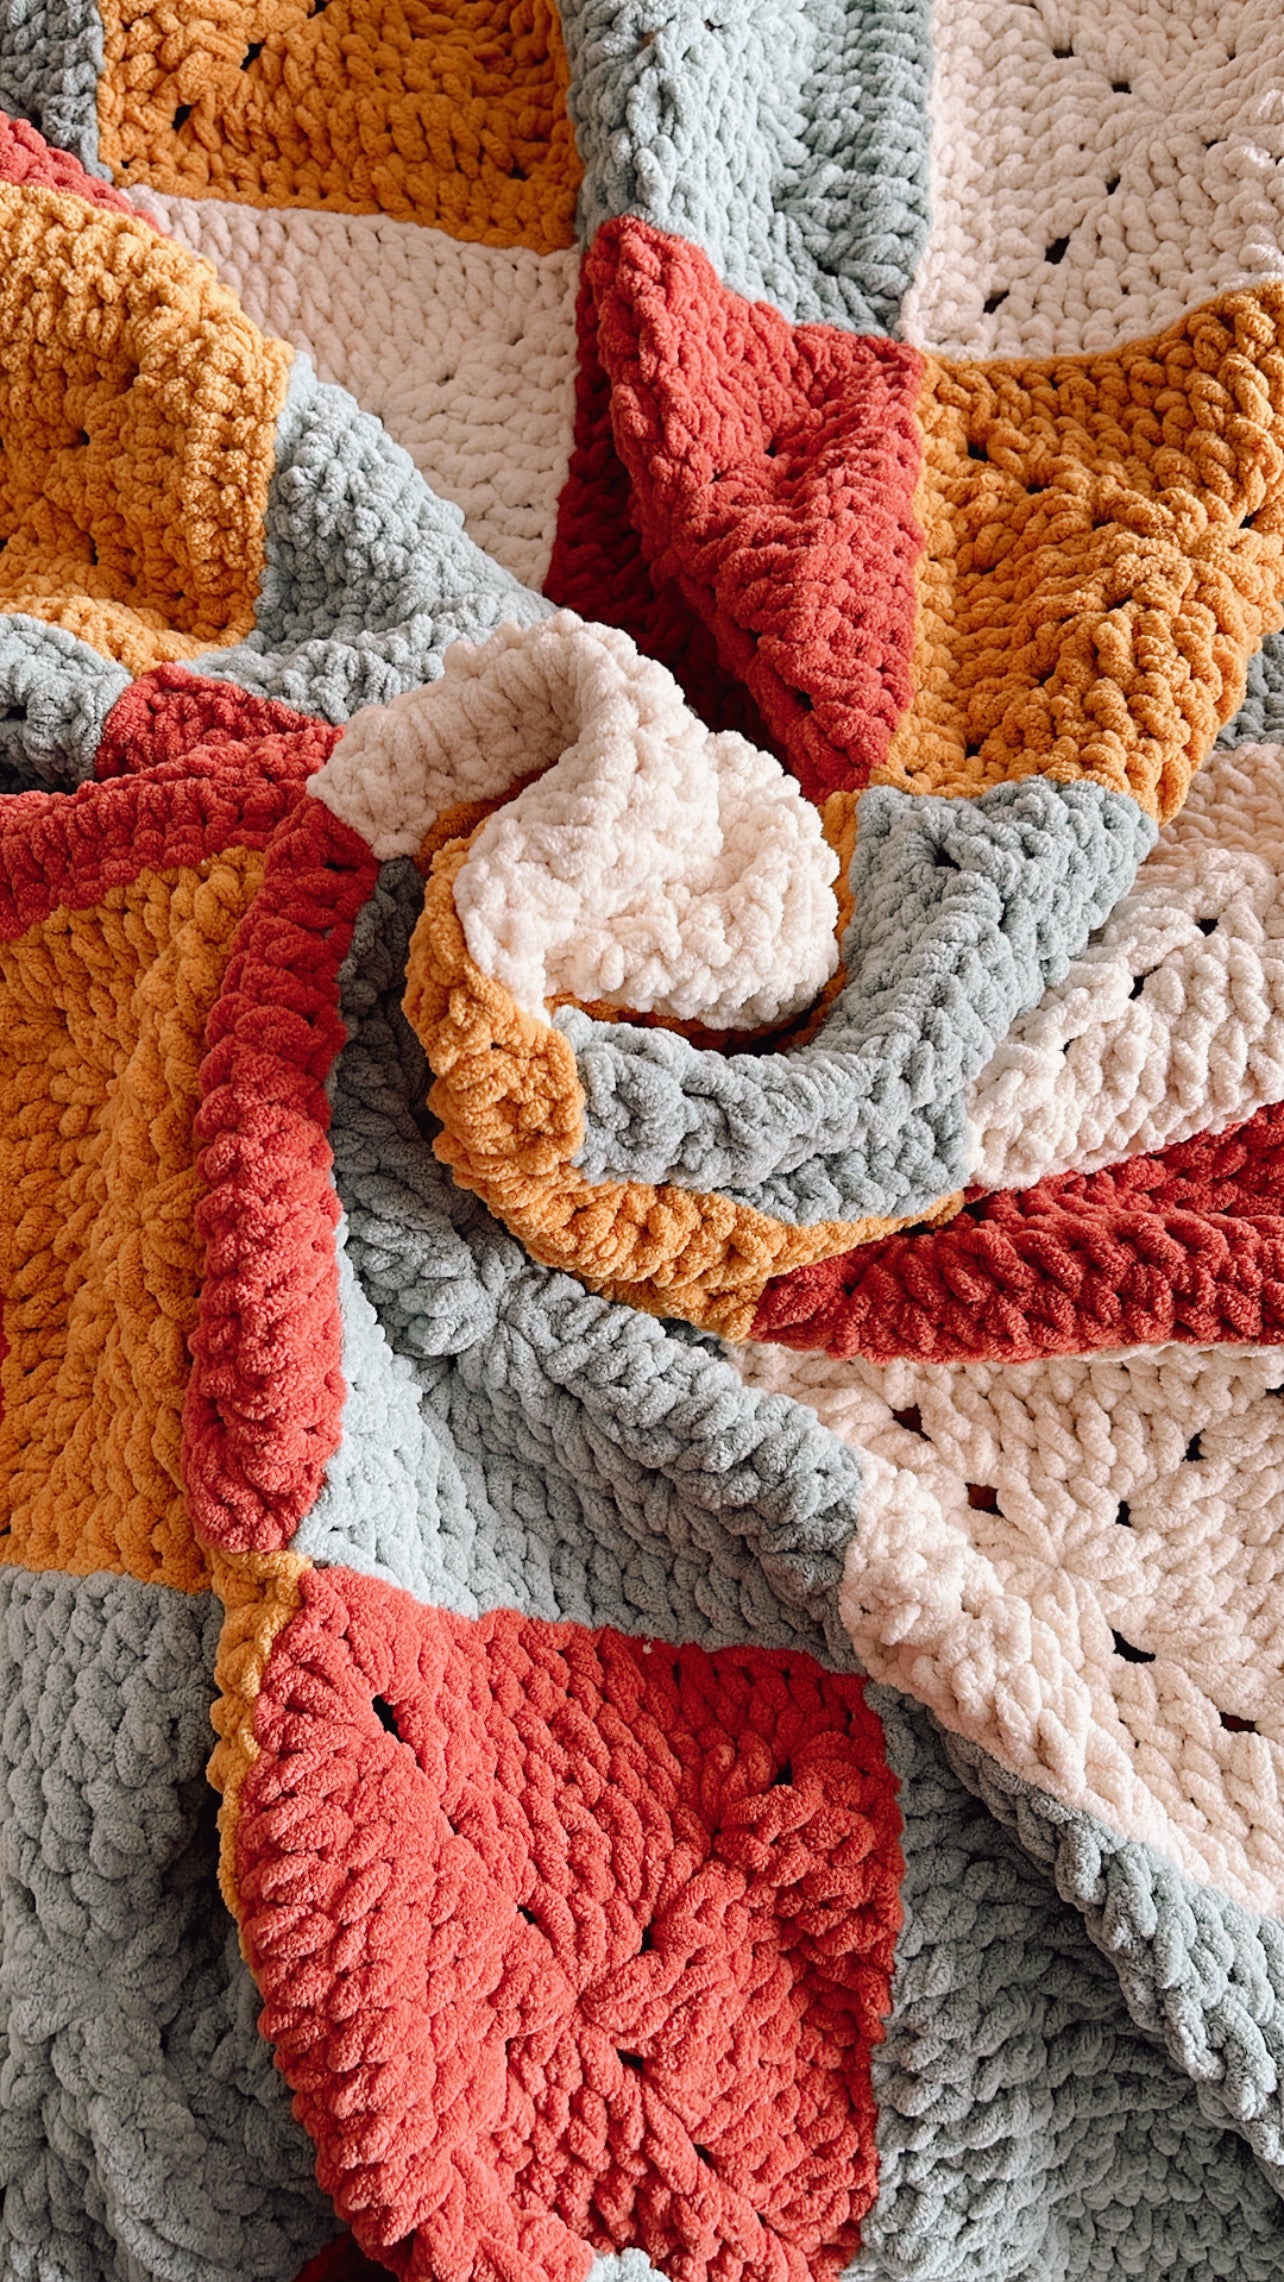 Not Your Abuelita's Blanket - Crochet Pattern